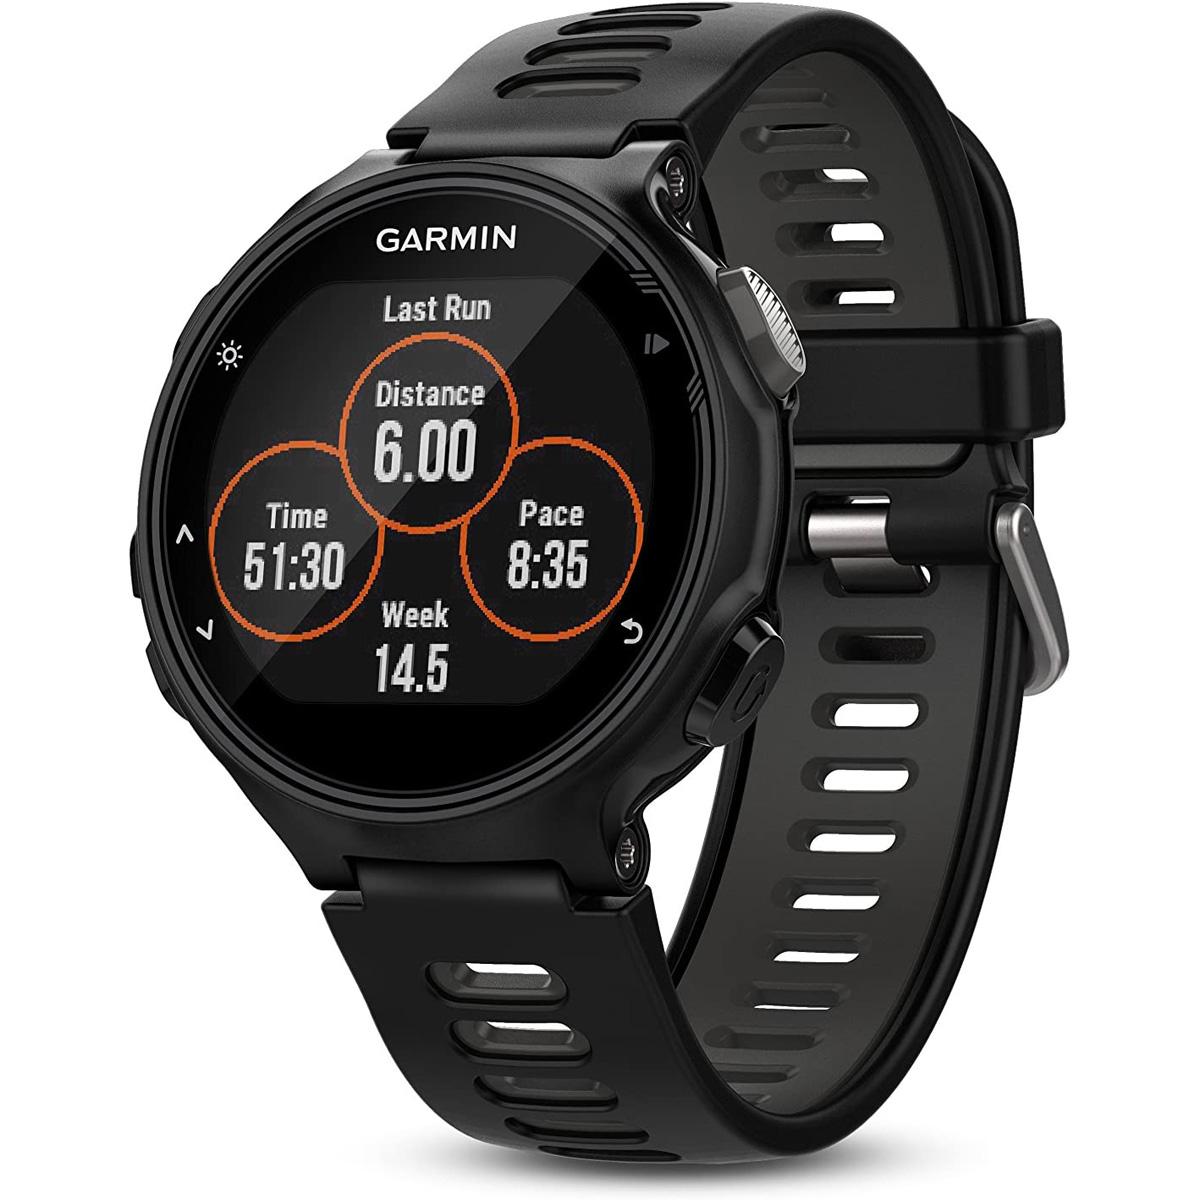 Garmin Forerunner 735XT GPS Running Smartwatch for $100.99 Shipped